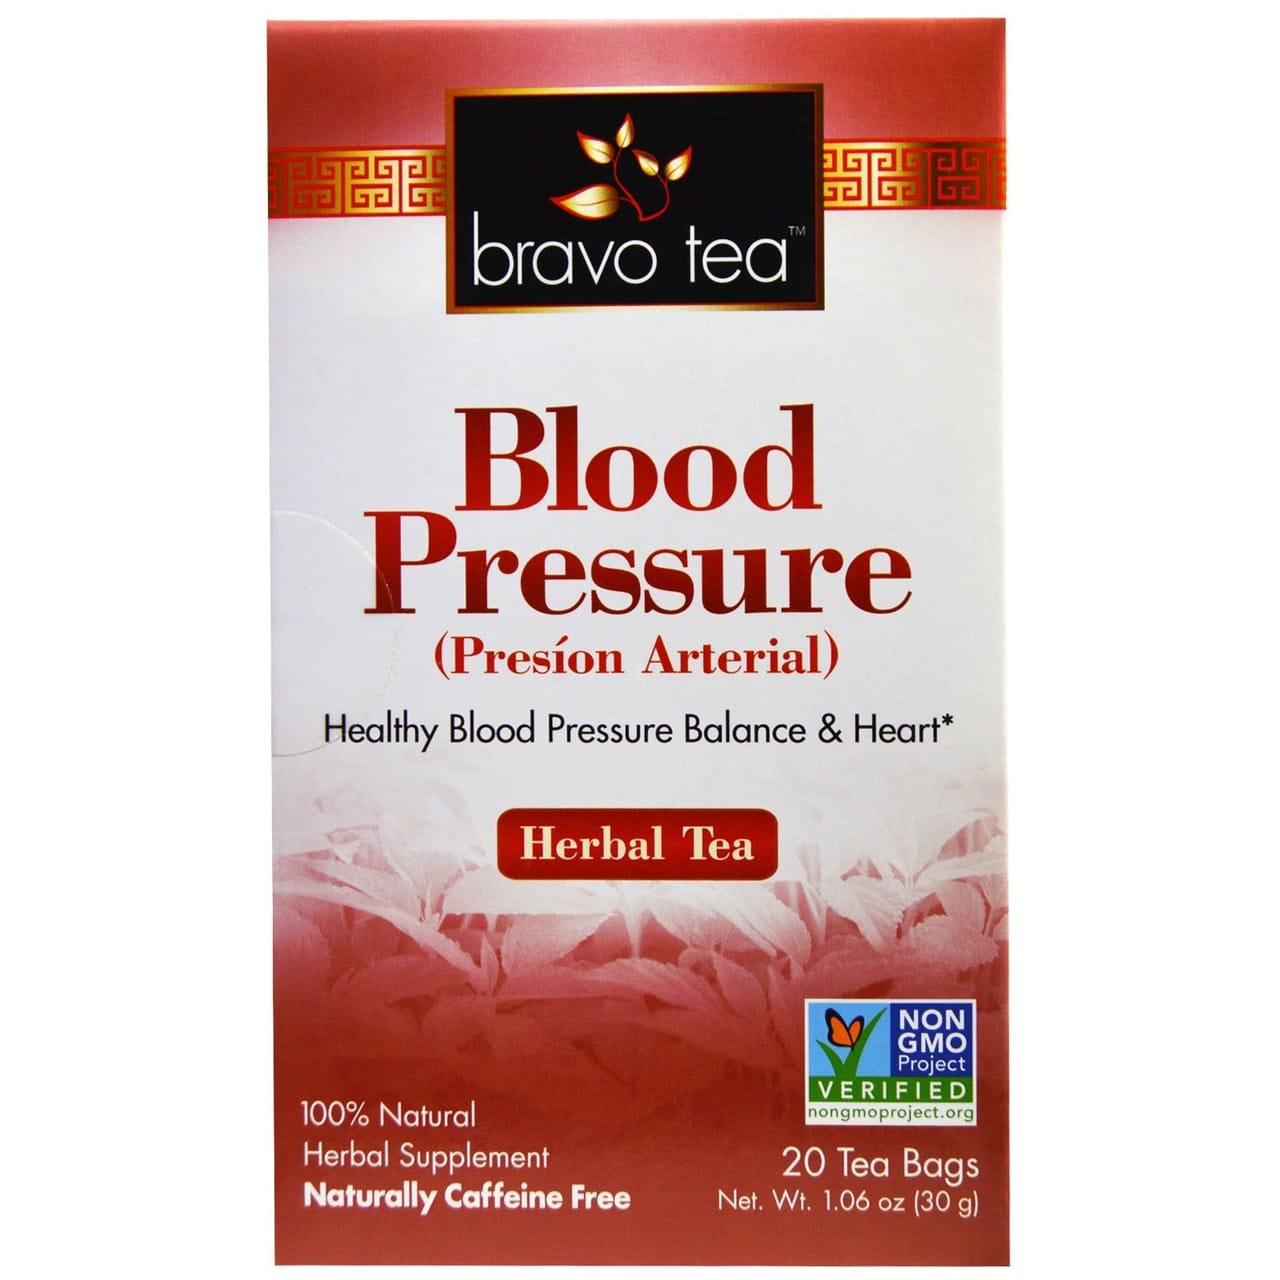 Blood Pressure Herbal Tea Caffeine Free 20 Tea Bags 1.06 oz, Bravo Teas ...